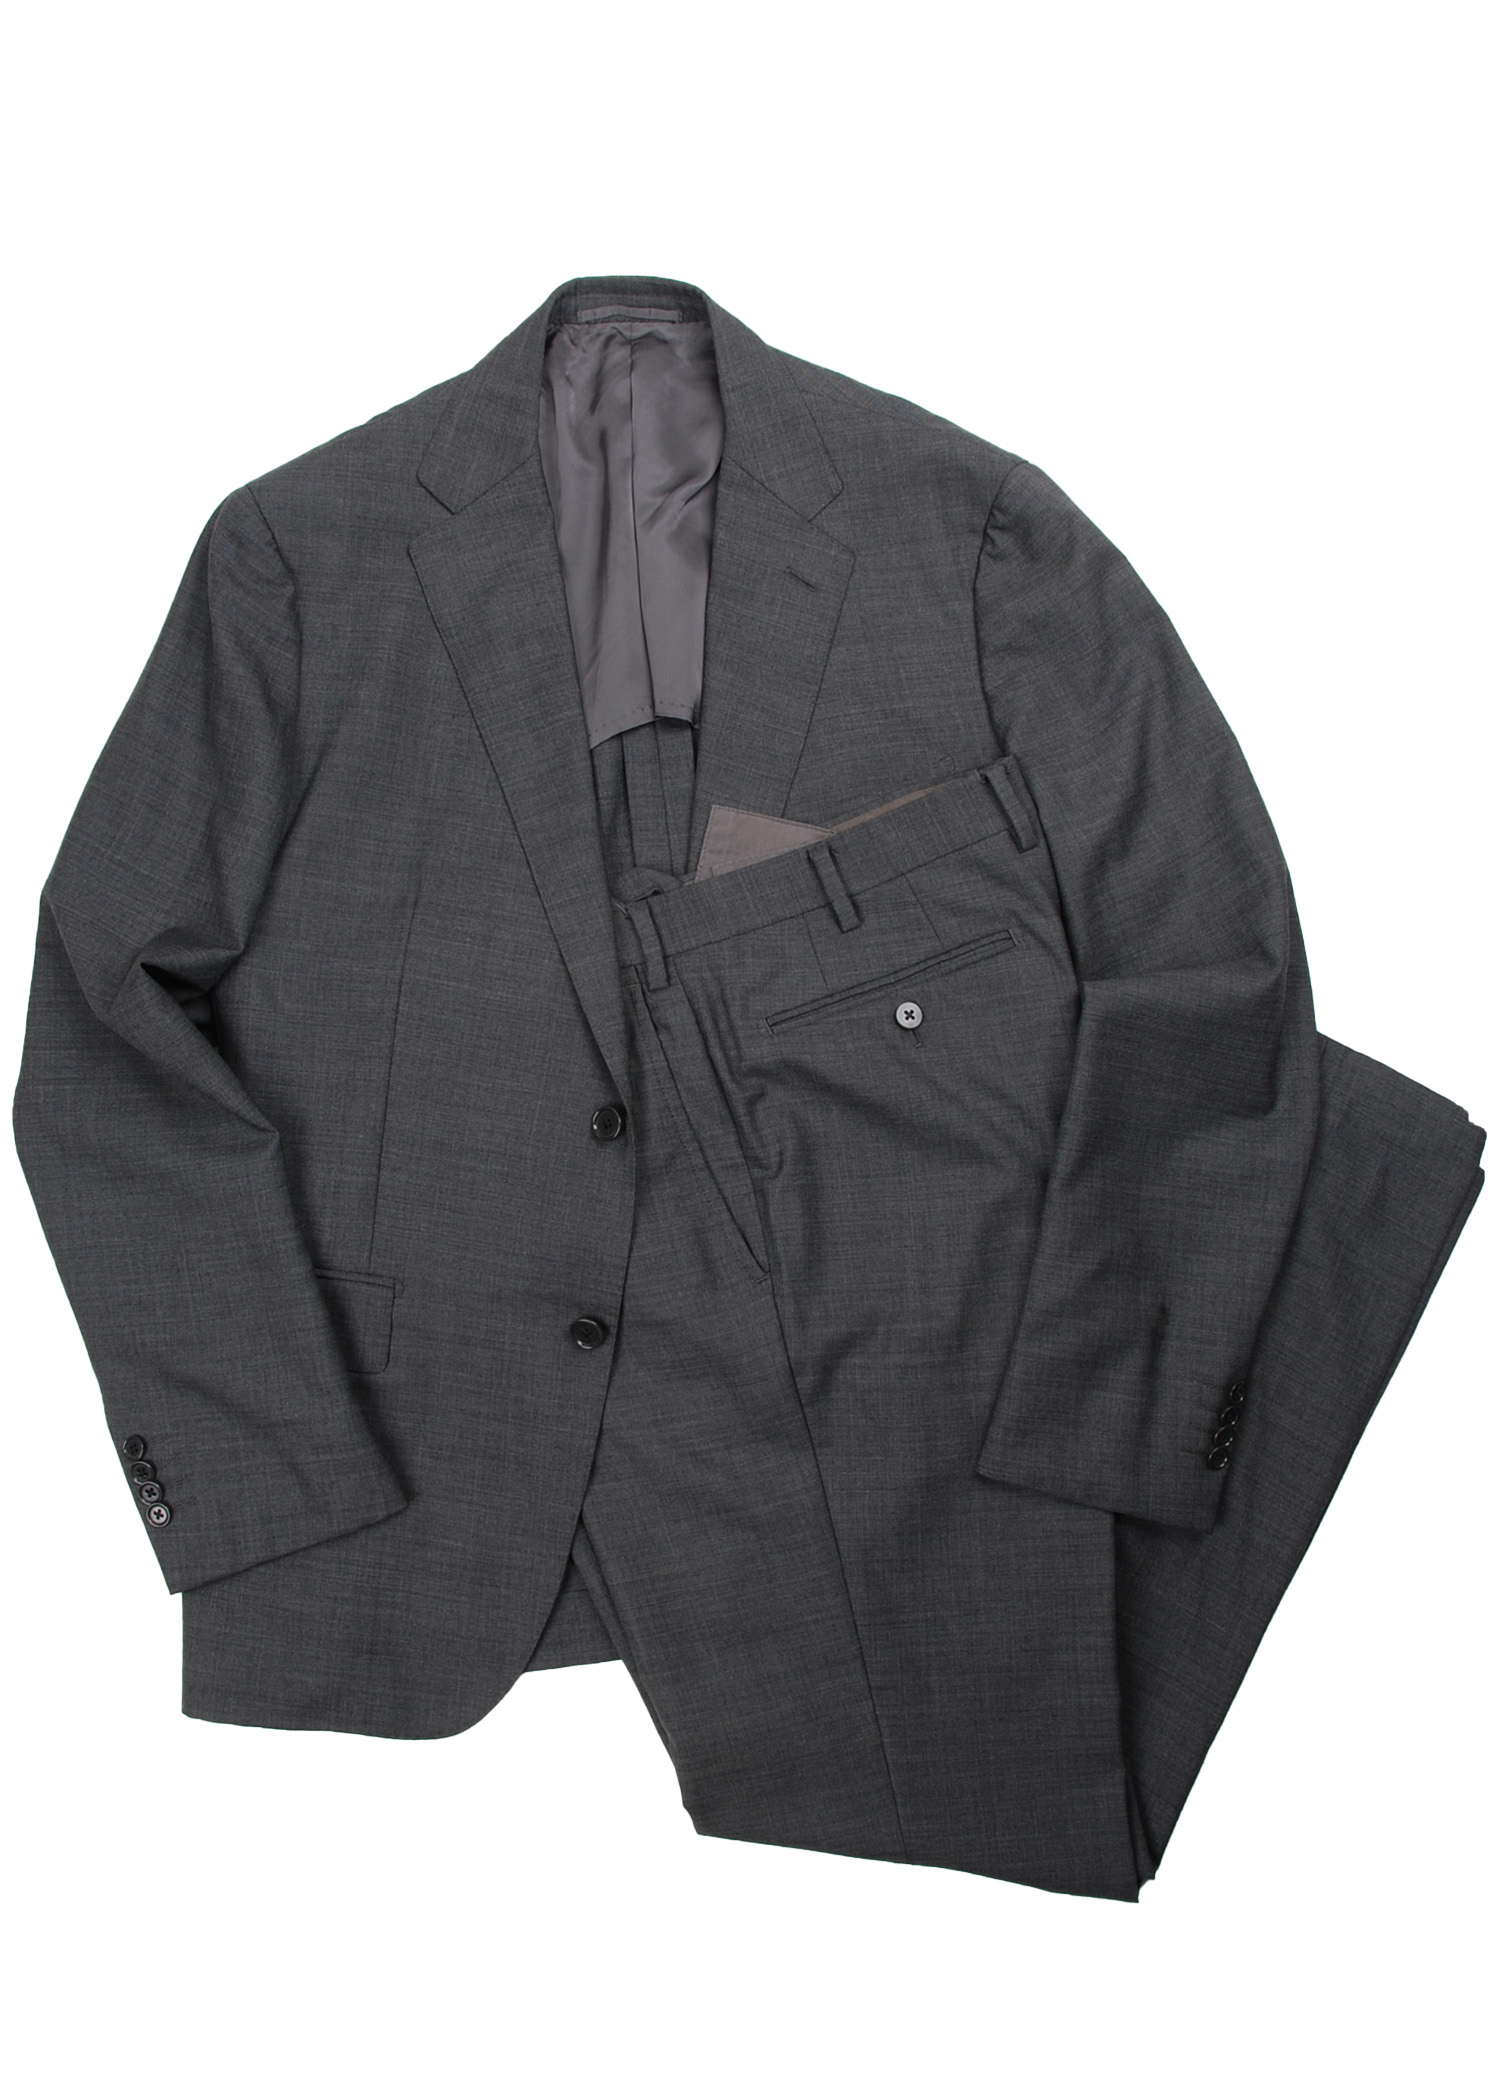 UNITED ARROWS suit (tashmania wool)